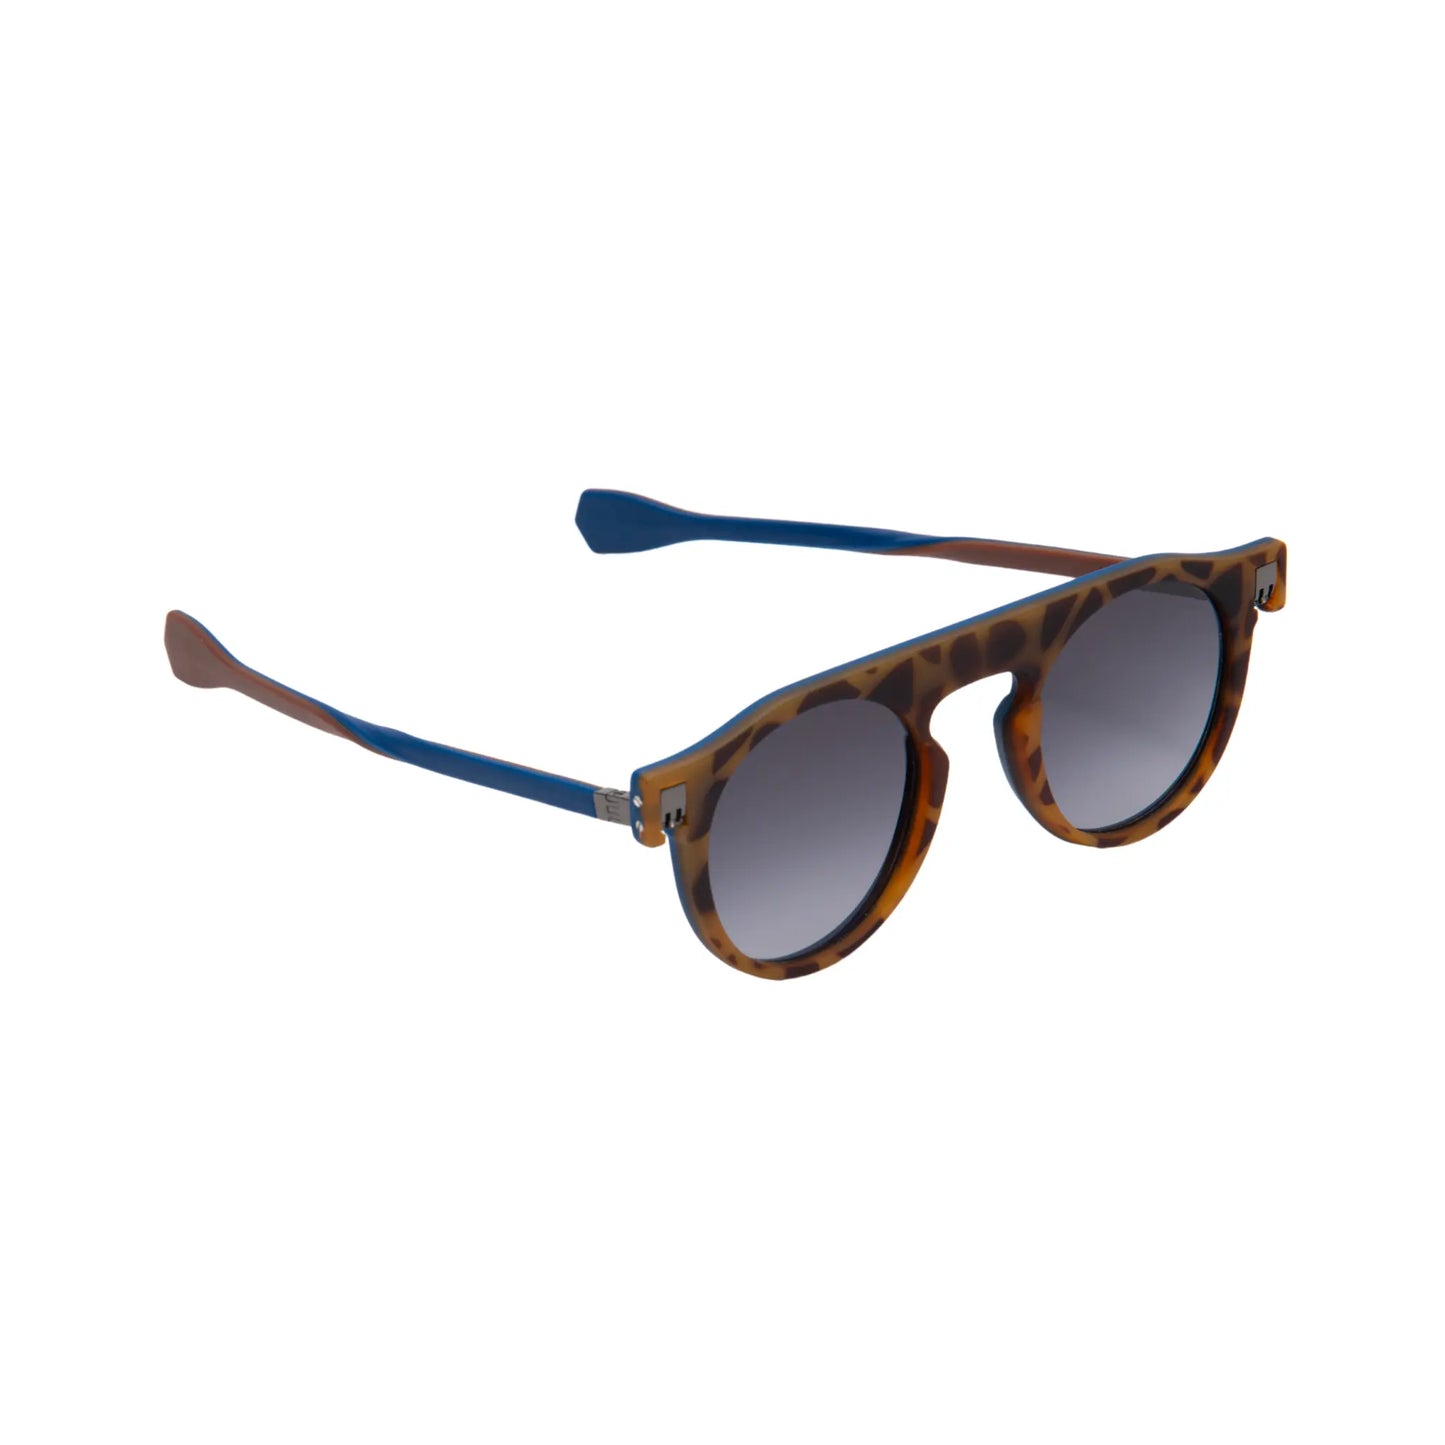 Reverso sunglasses Havana & dark blue reversible & ultra light side view